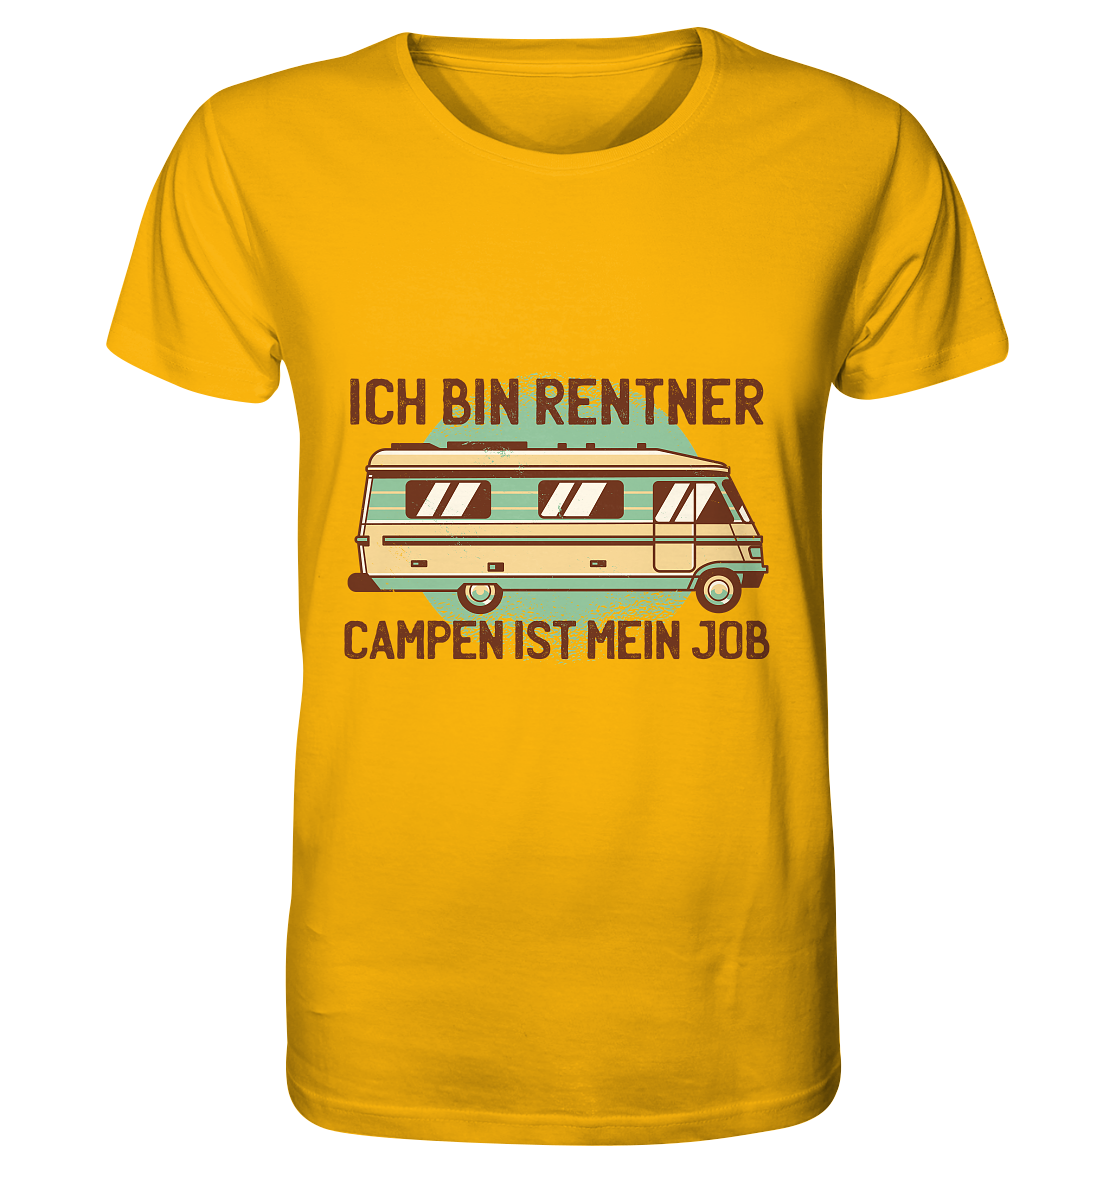 Ich bin Rentner Campen ist mein Job - Organic Shirt - Online Kaufhaus München